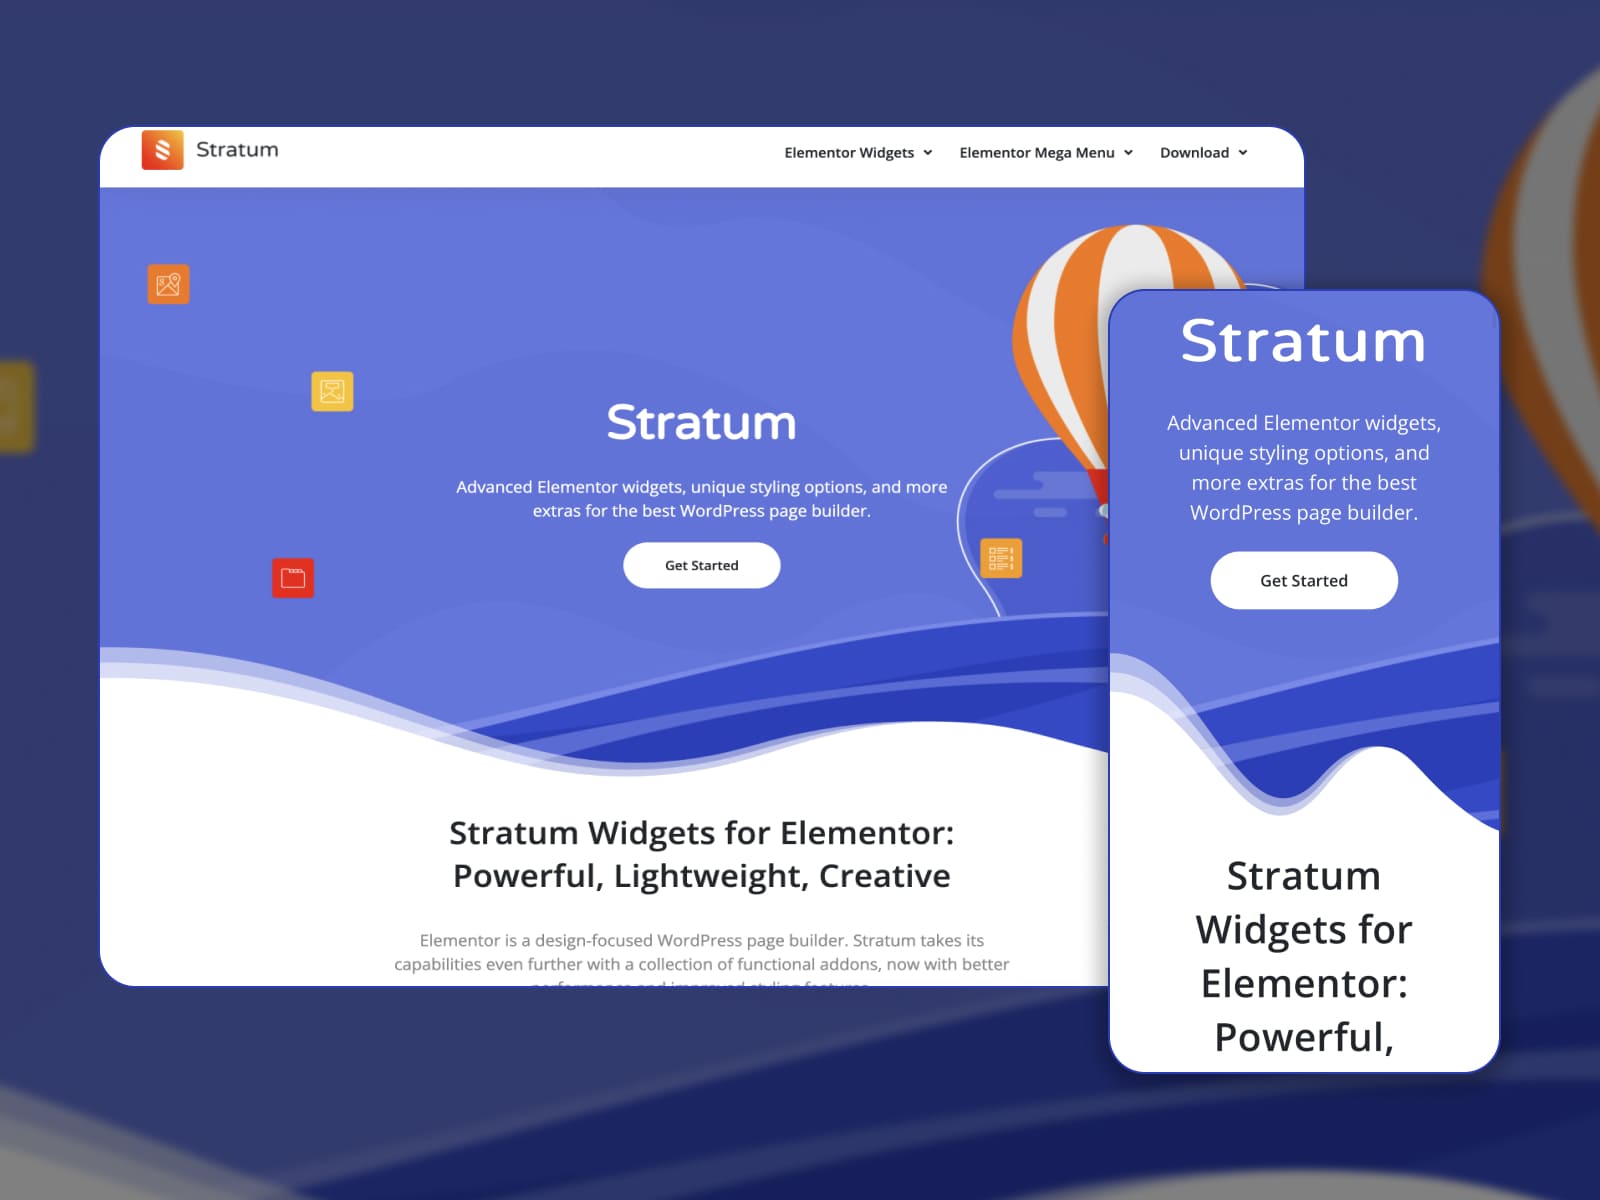 Stratum 免費小工具的登陸頁面。